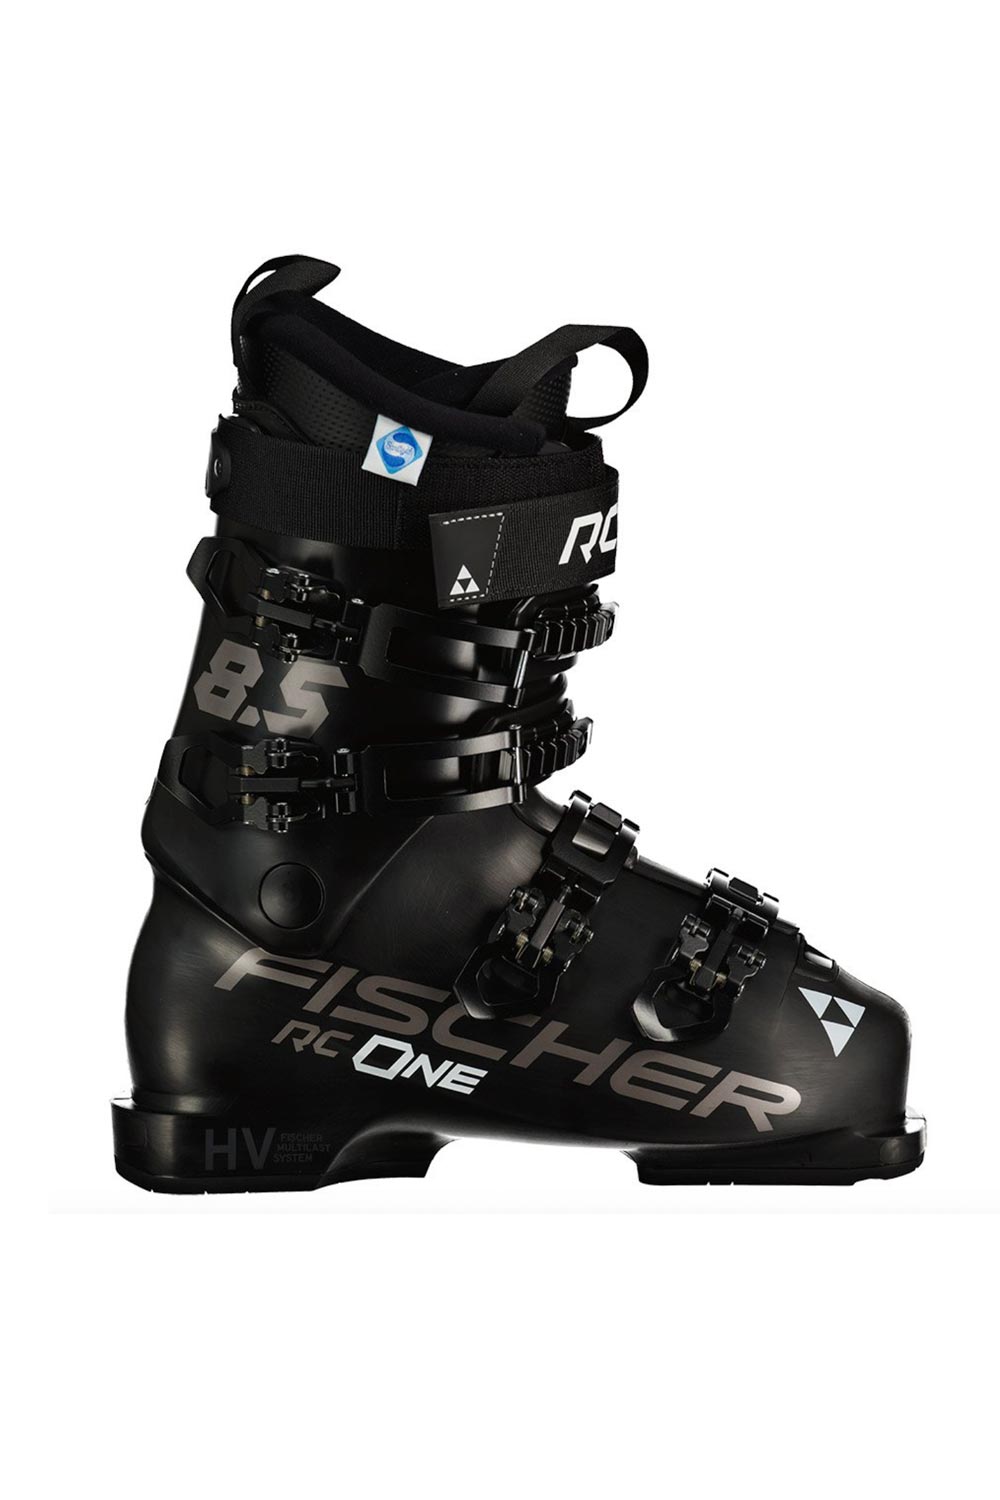 Fischer ski boots, women's, black